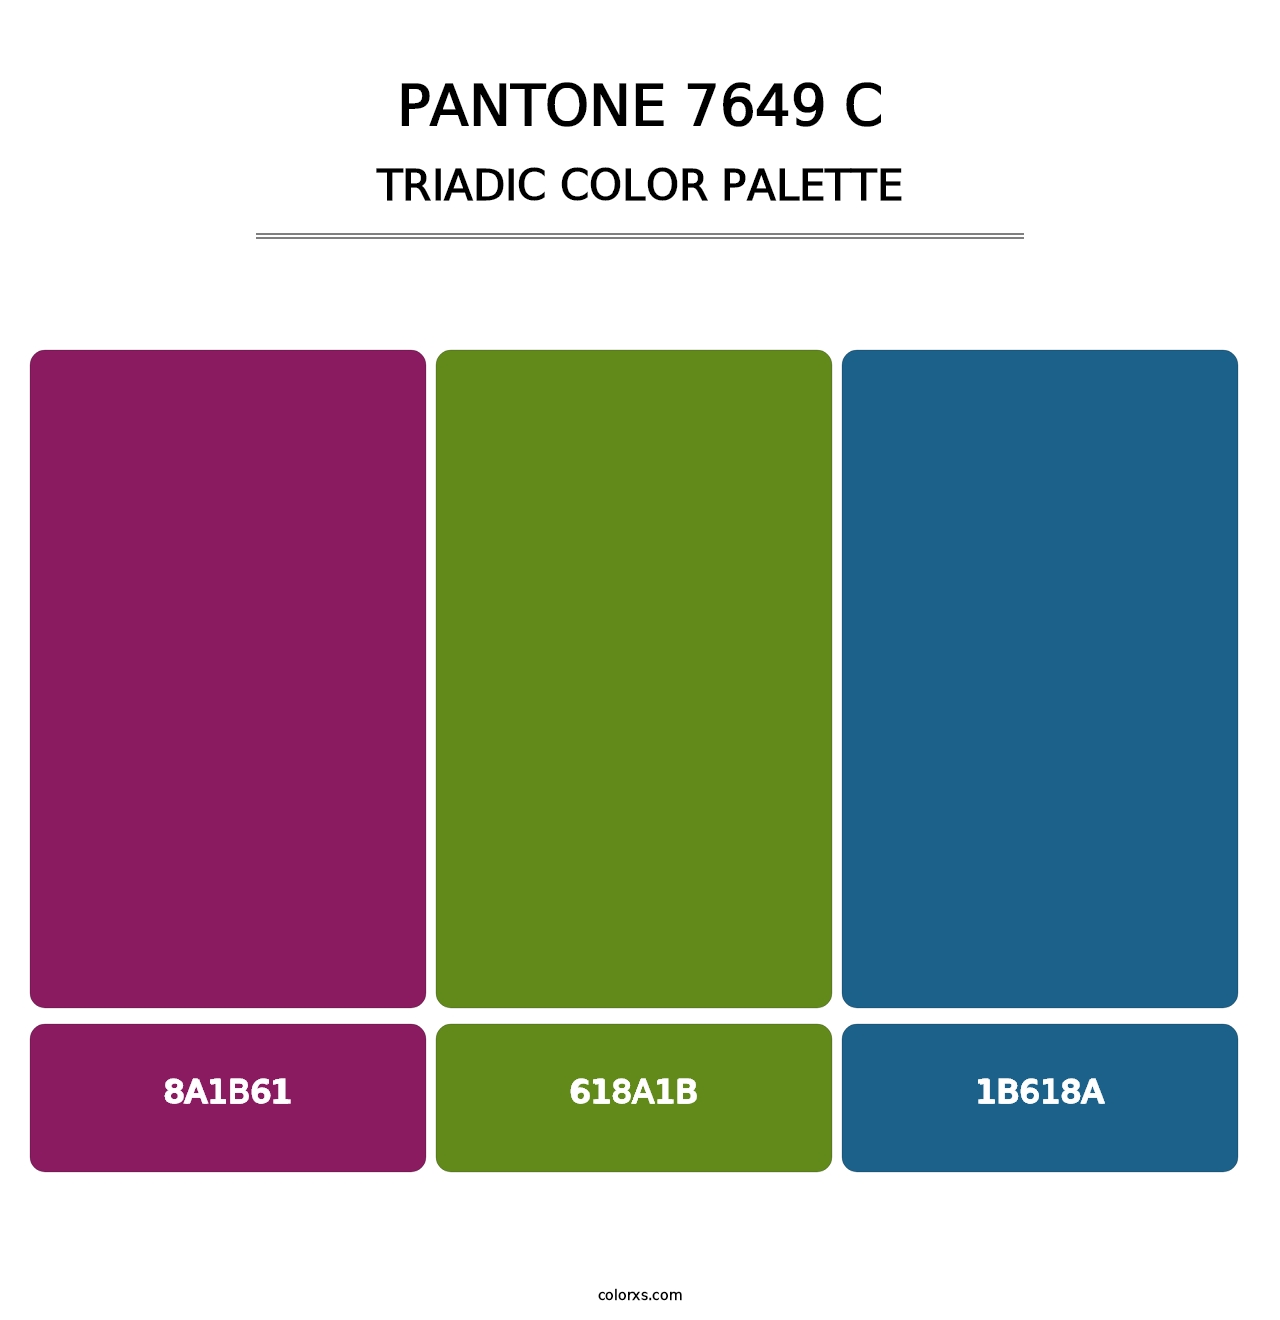 PANTONE 7649 C - Triadic Color Palette